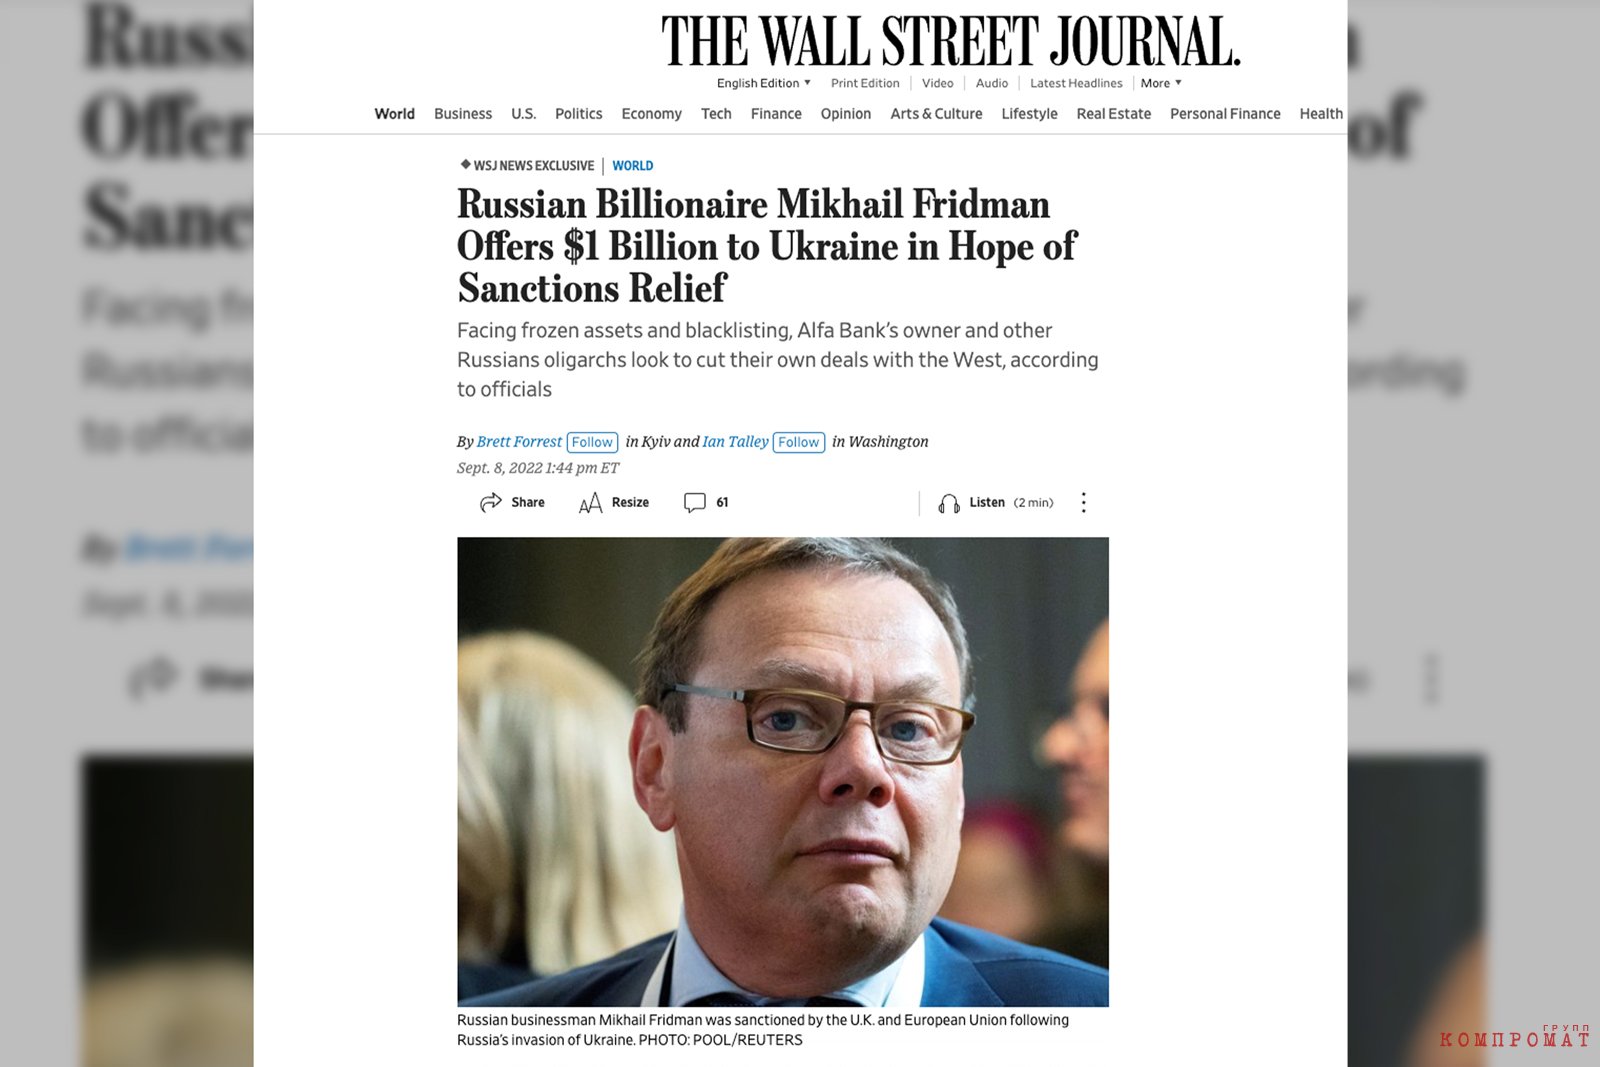 Согласно данным американского The Wall Street Journal, в обмен на снятие с себя западных санкций Михаил Фридман предлагал вложить в украинский "Сенс-банк" 1 миллиард долларов из собственных средств.